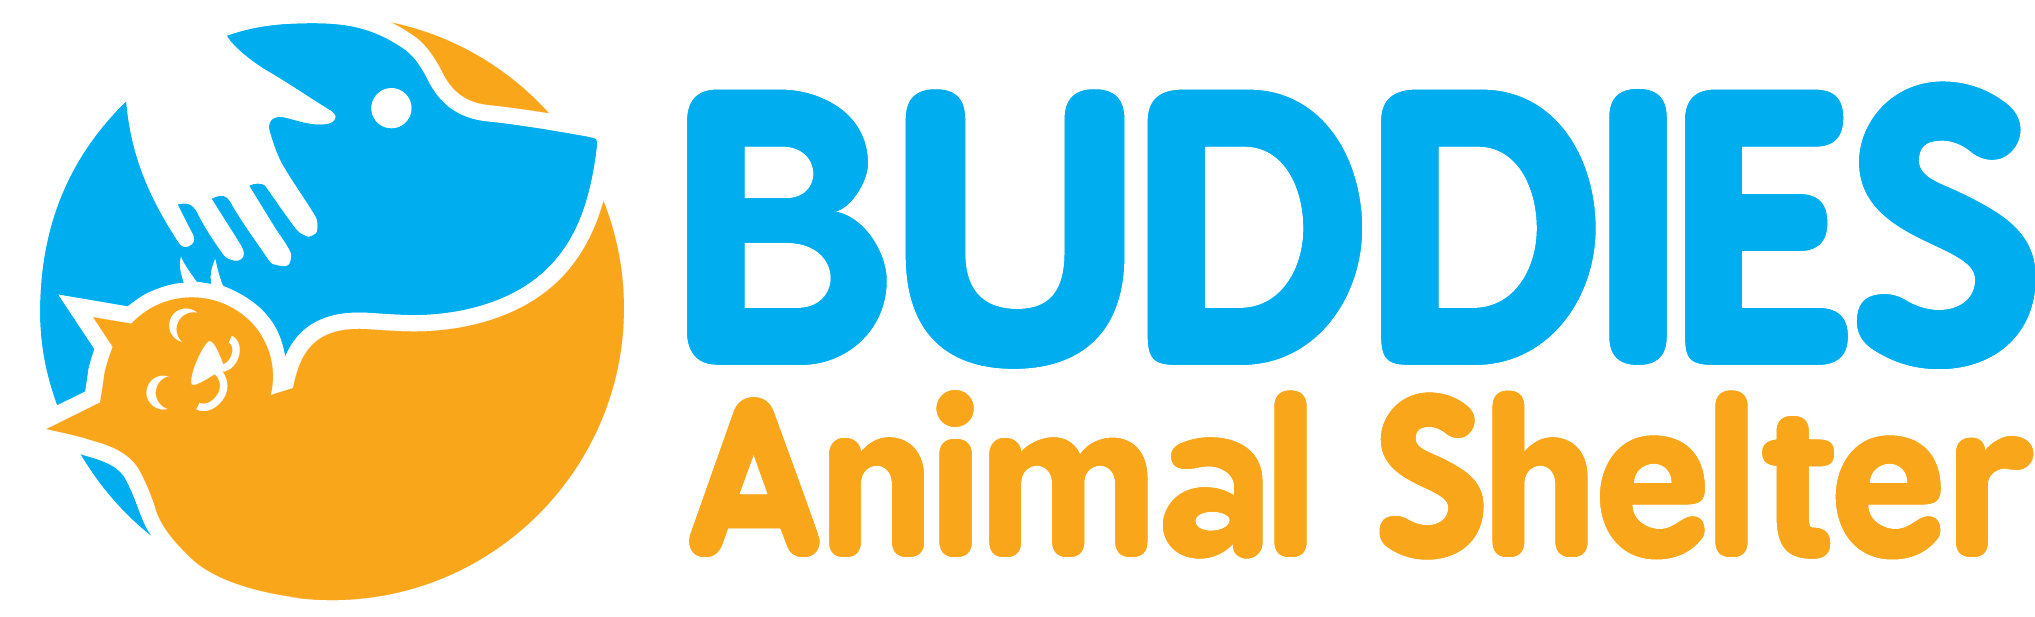 Buddies Logo - Hettenbach Graphic Design - Buddies logo